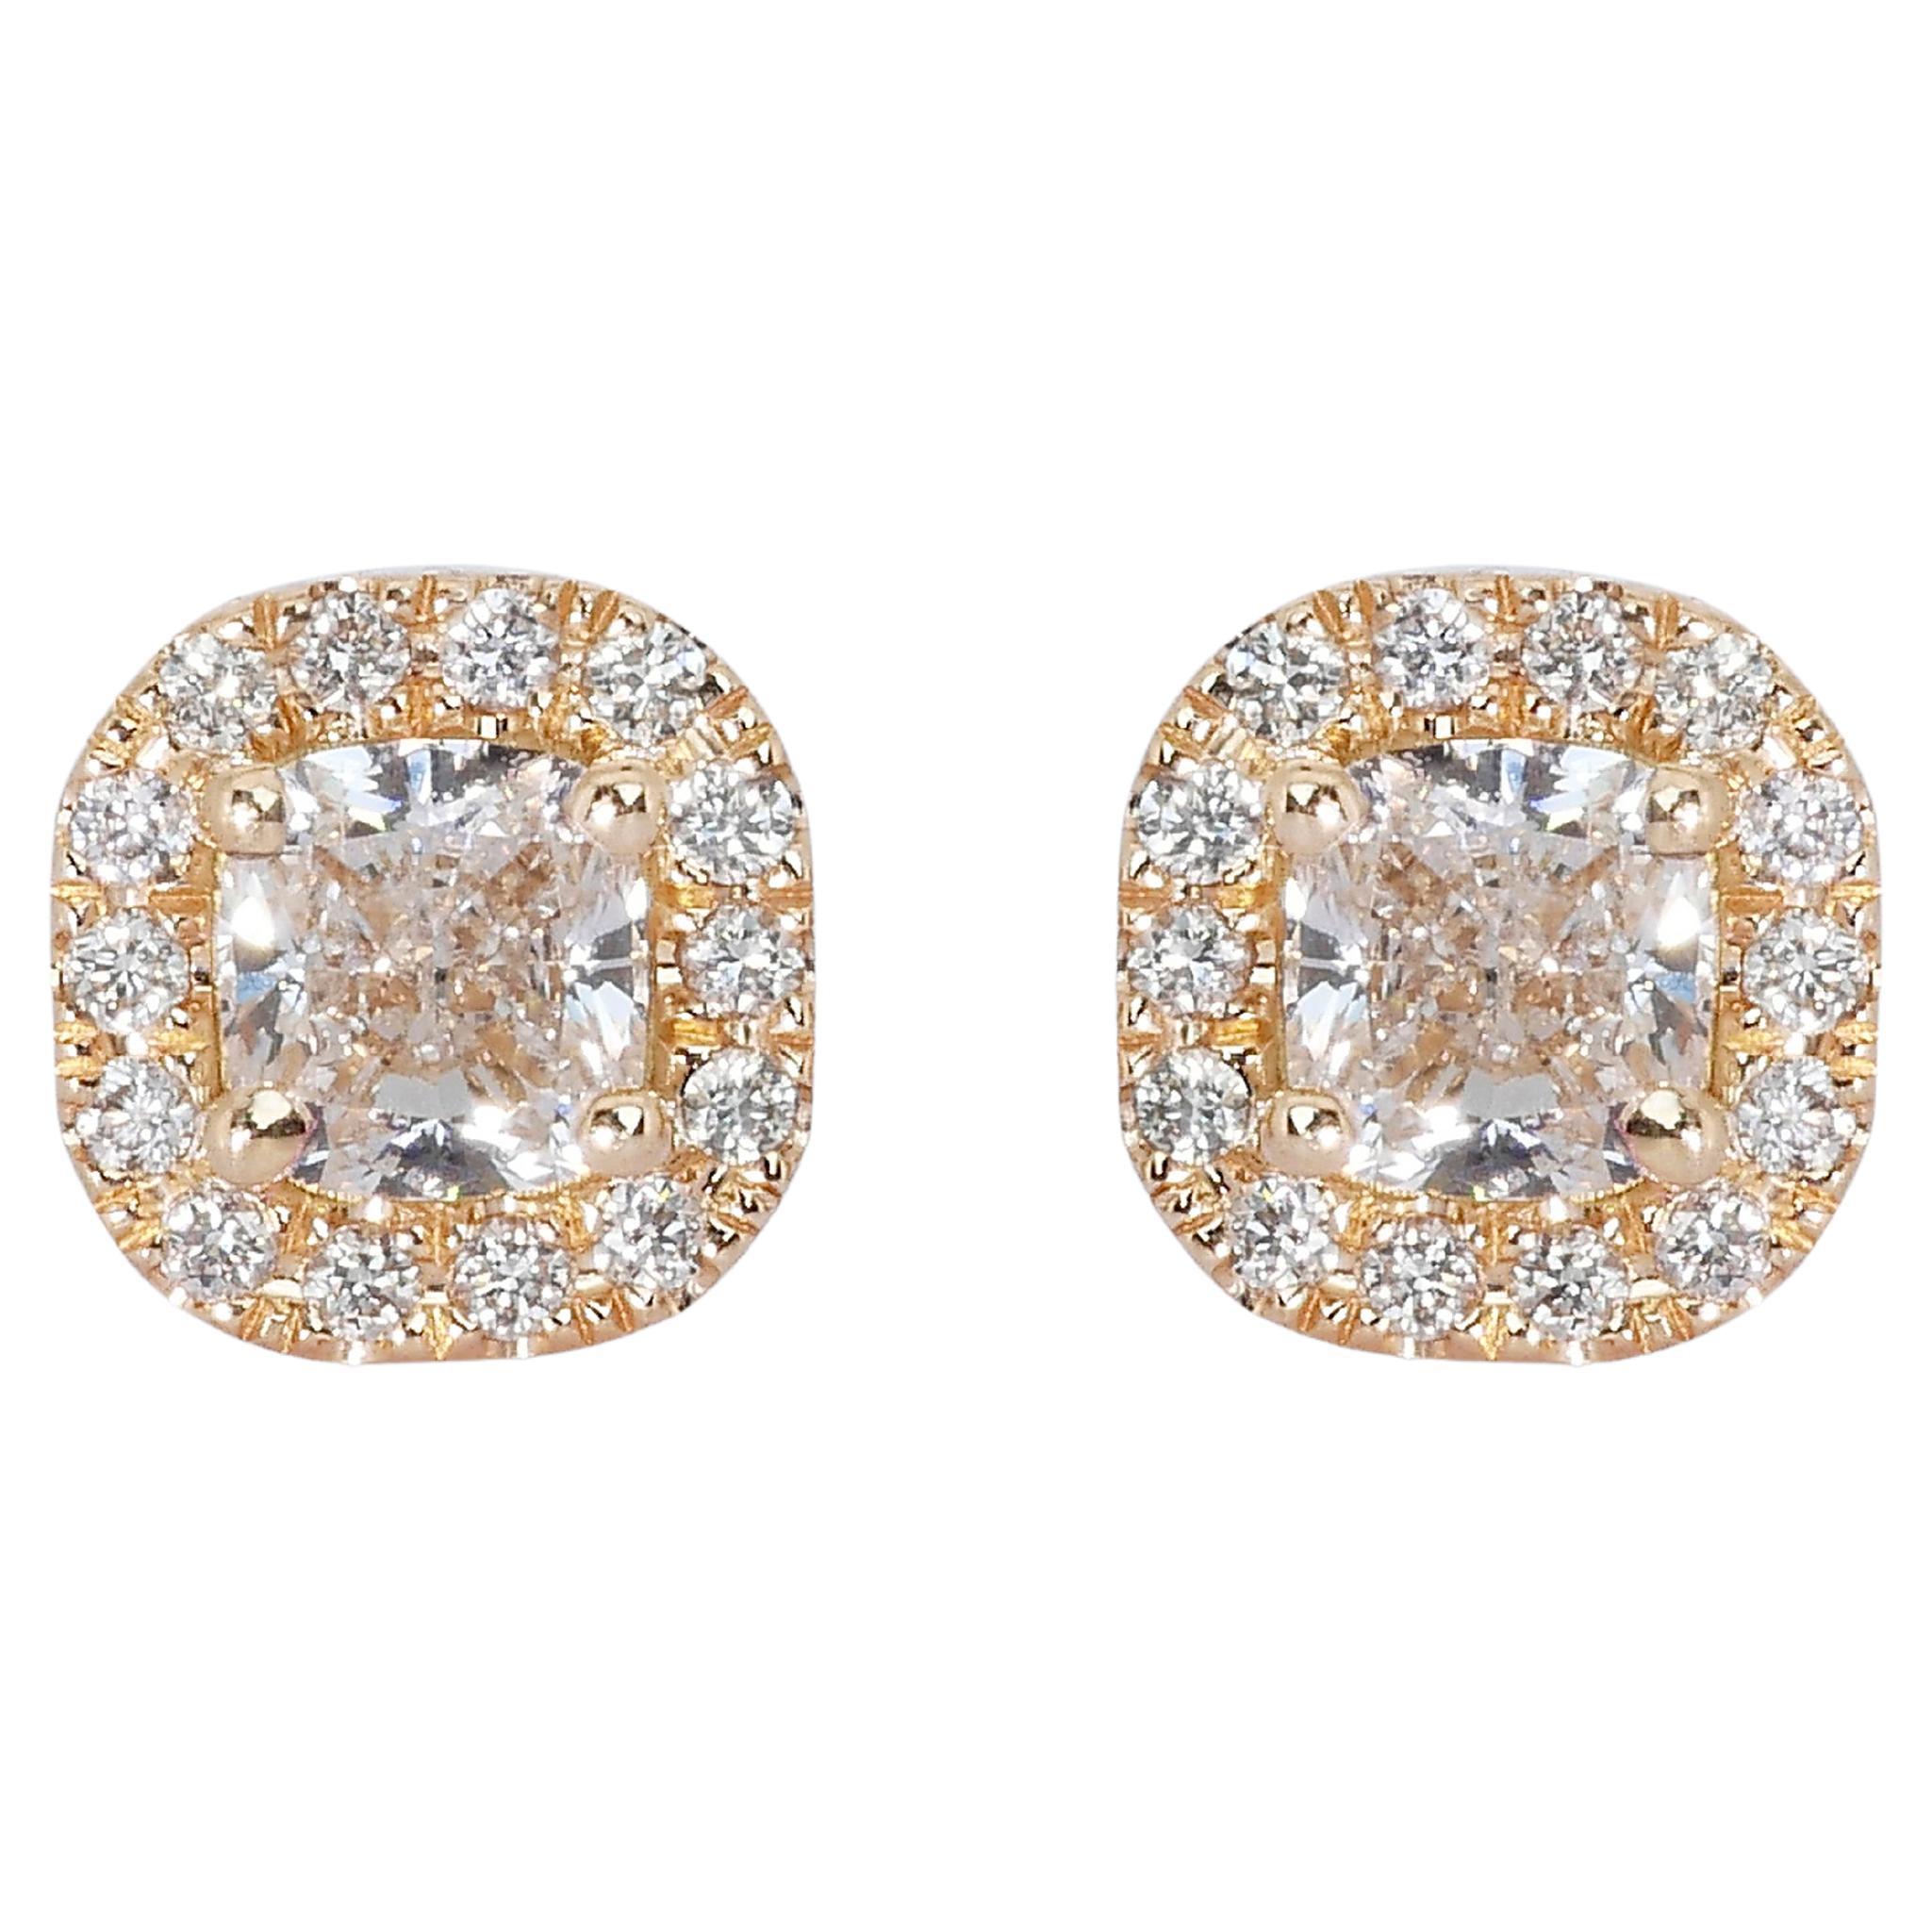 Glamouröse Halo-Ohrringe mit 2,20 Karat Diamanten in  18 Karat Gelbgold – GIA-zertifiziert